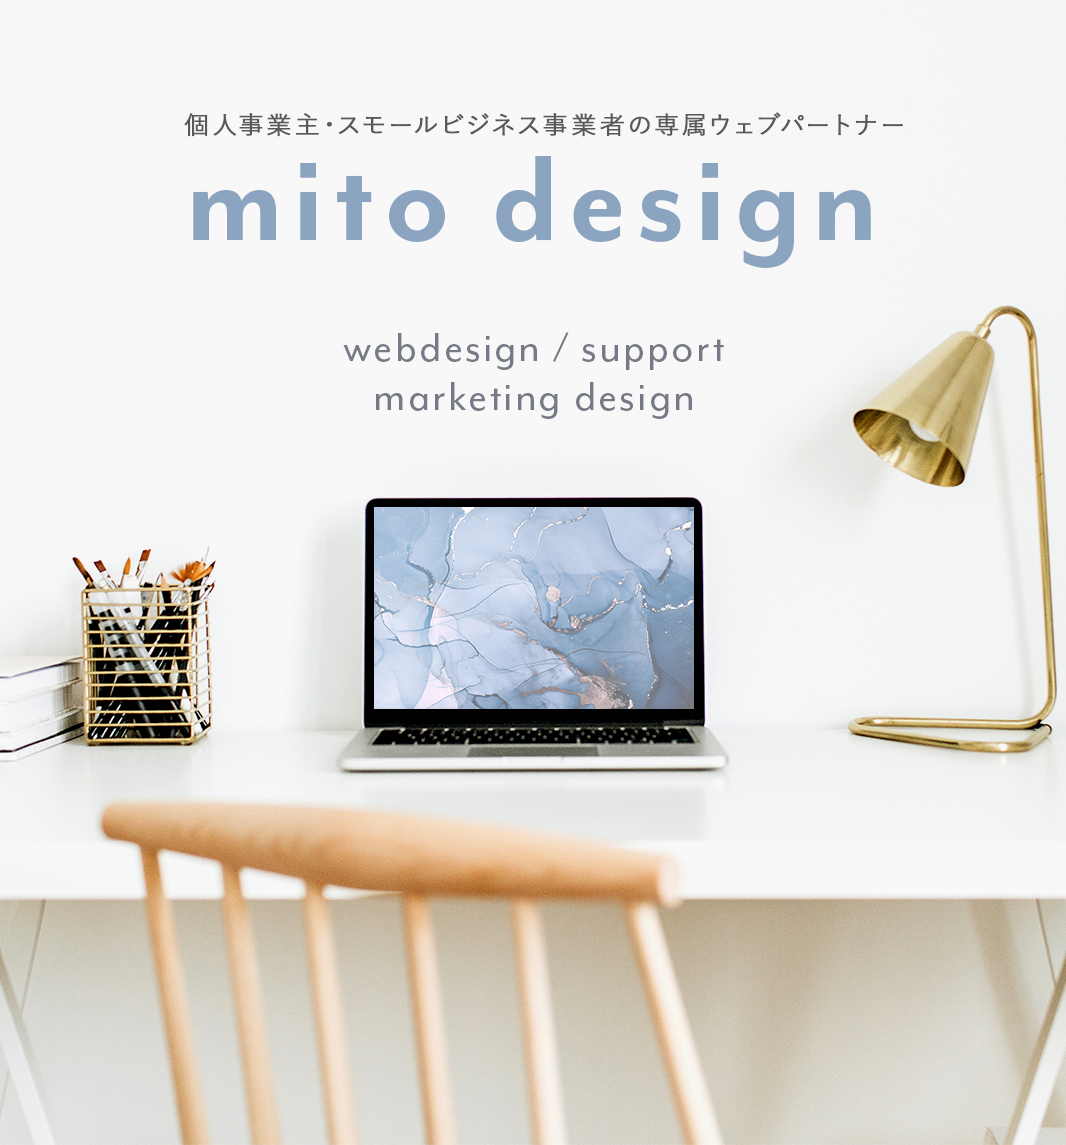 mitodesign ミトデザイン